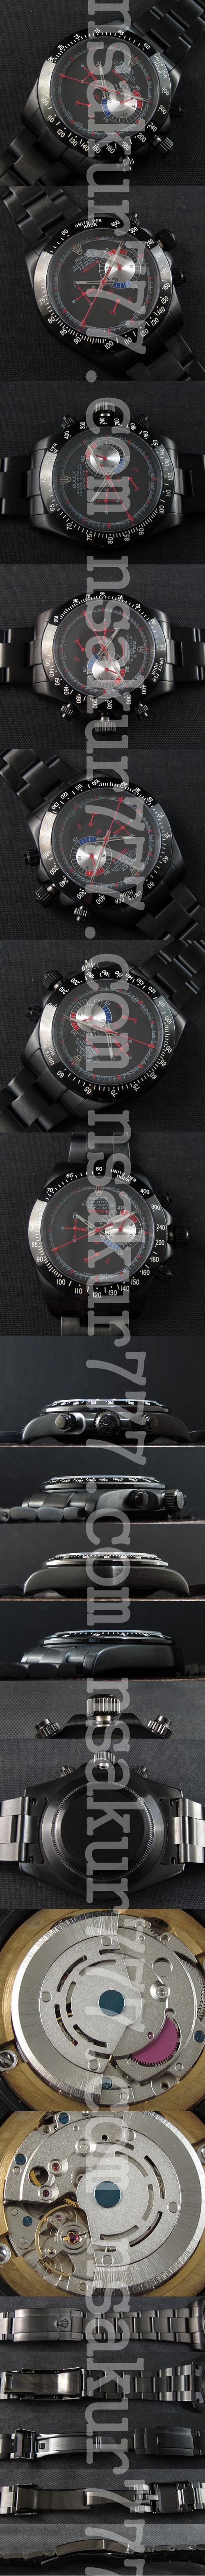 コスパ最強 ロレックス コピー時計 オイスターパーペチュアルBREVET Asian 21600振動 Movement クロノグラフ ブラック